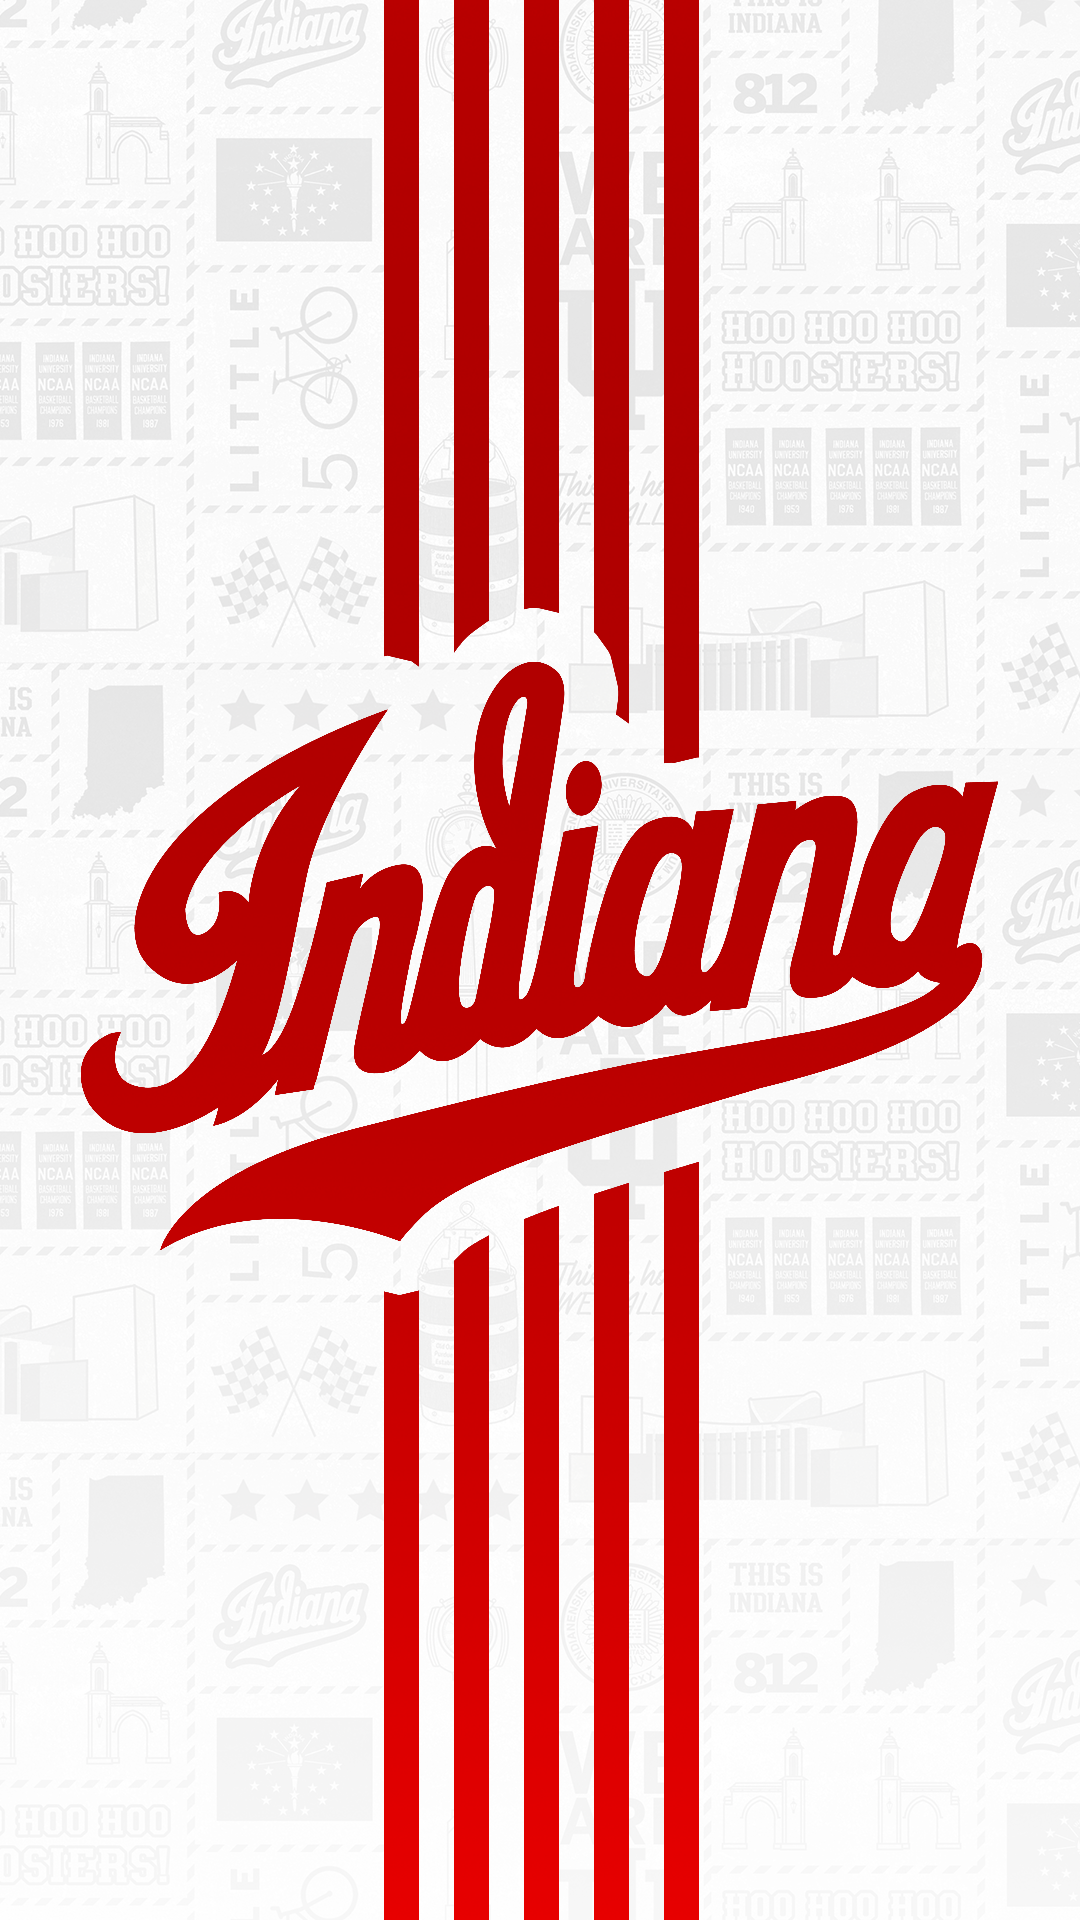 Indiana University Logo - Phone Wallpapers - Indiana University Athletics